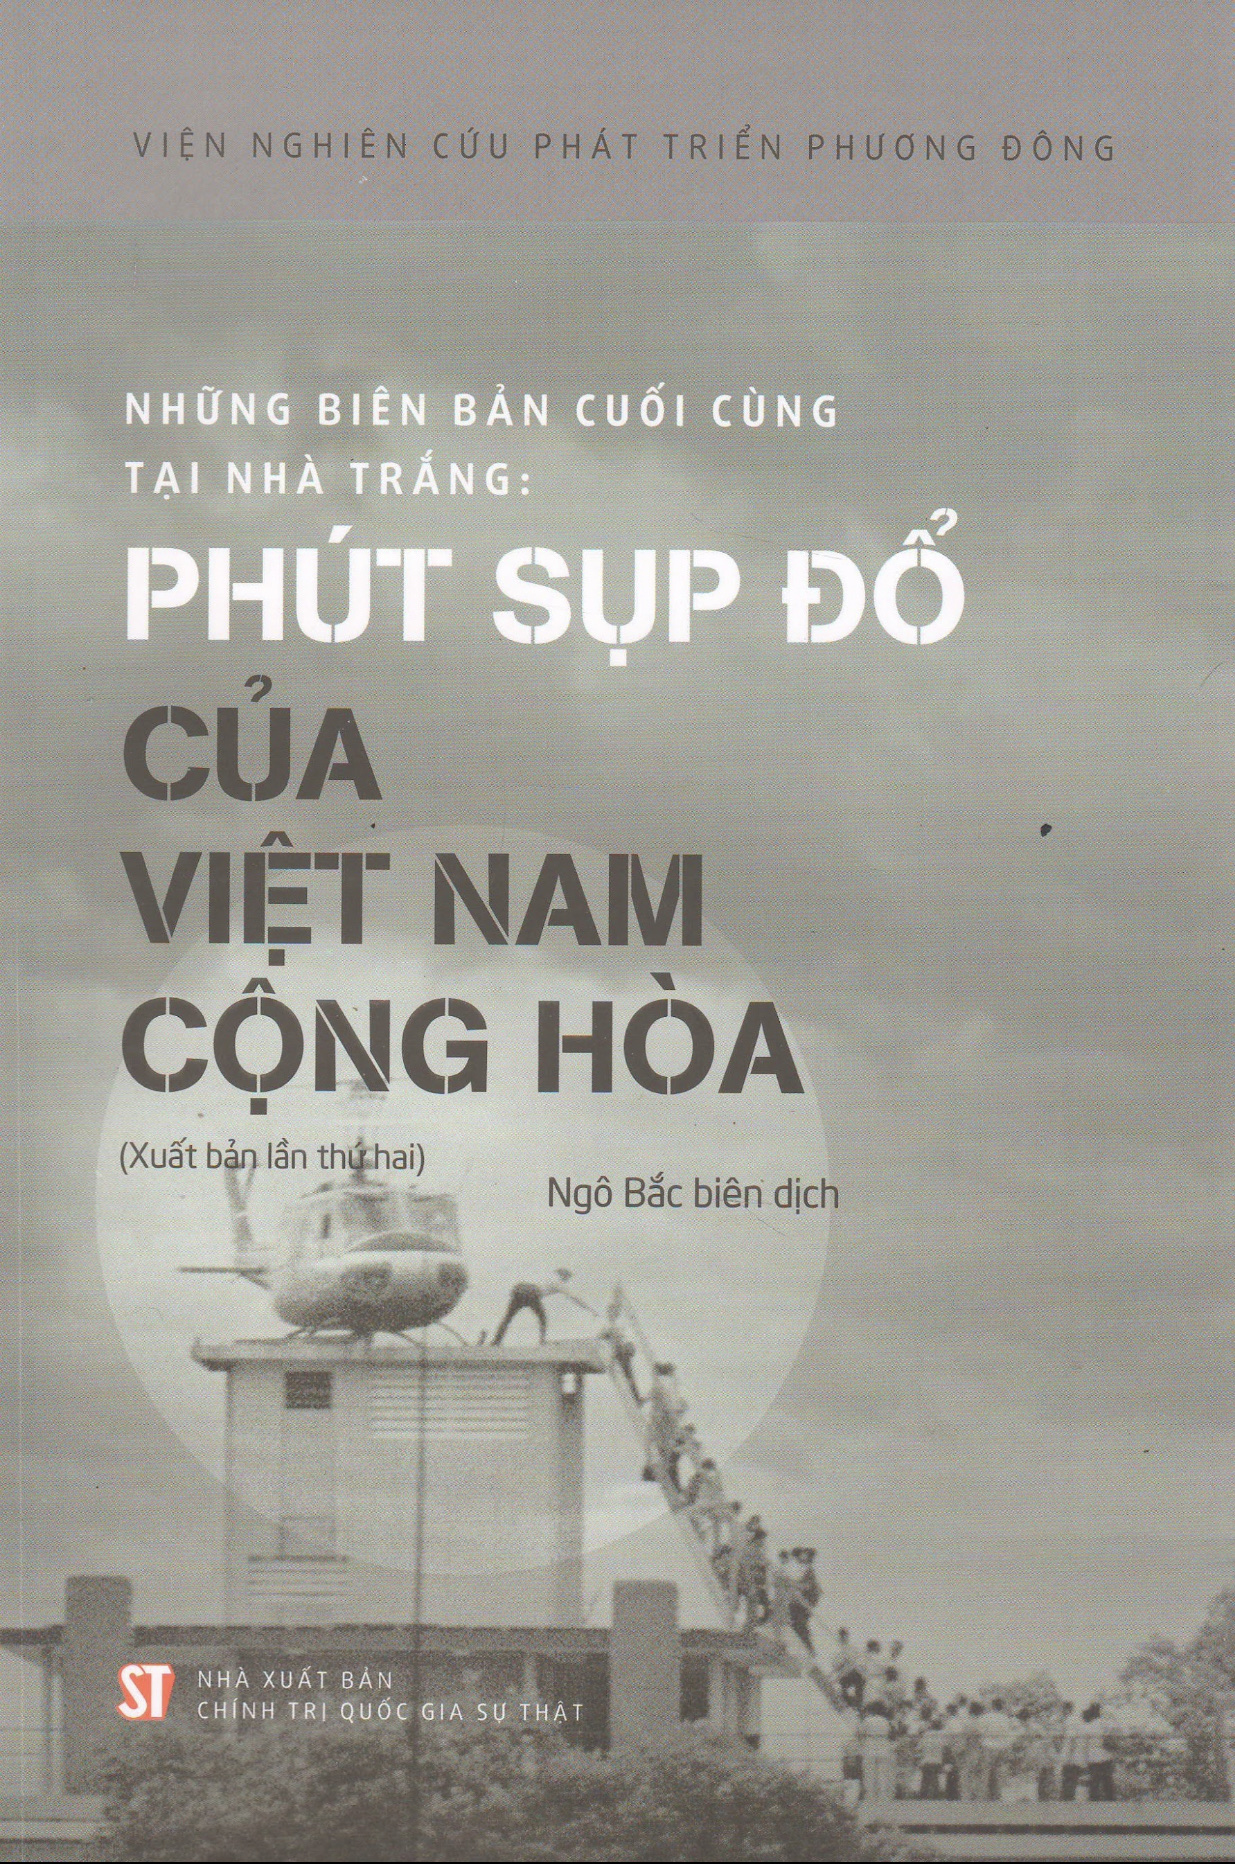 Những biên bản cuối cùng tại Nhà Trắng: Phút sụp đổ của Việt Nam cộng hòa (Xuất bản lần thứ hai)